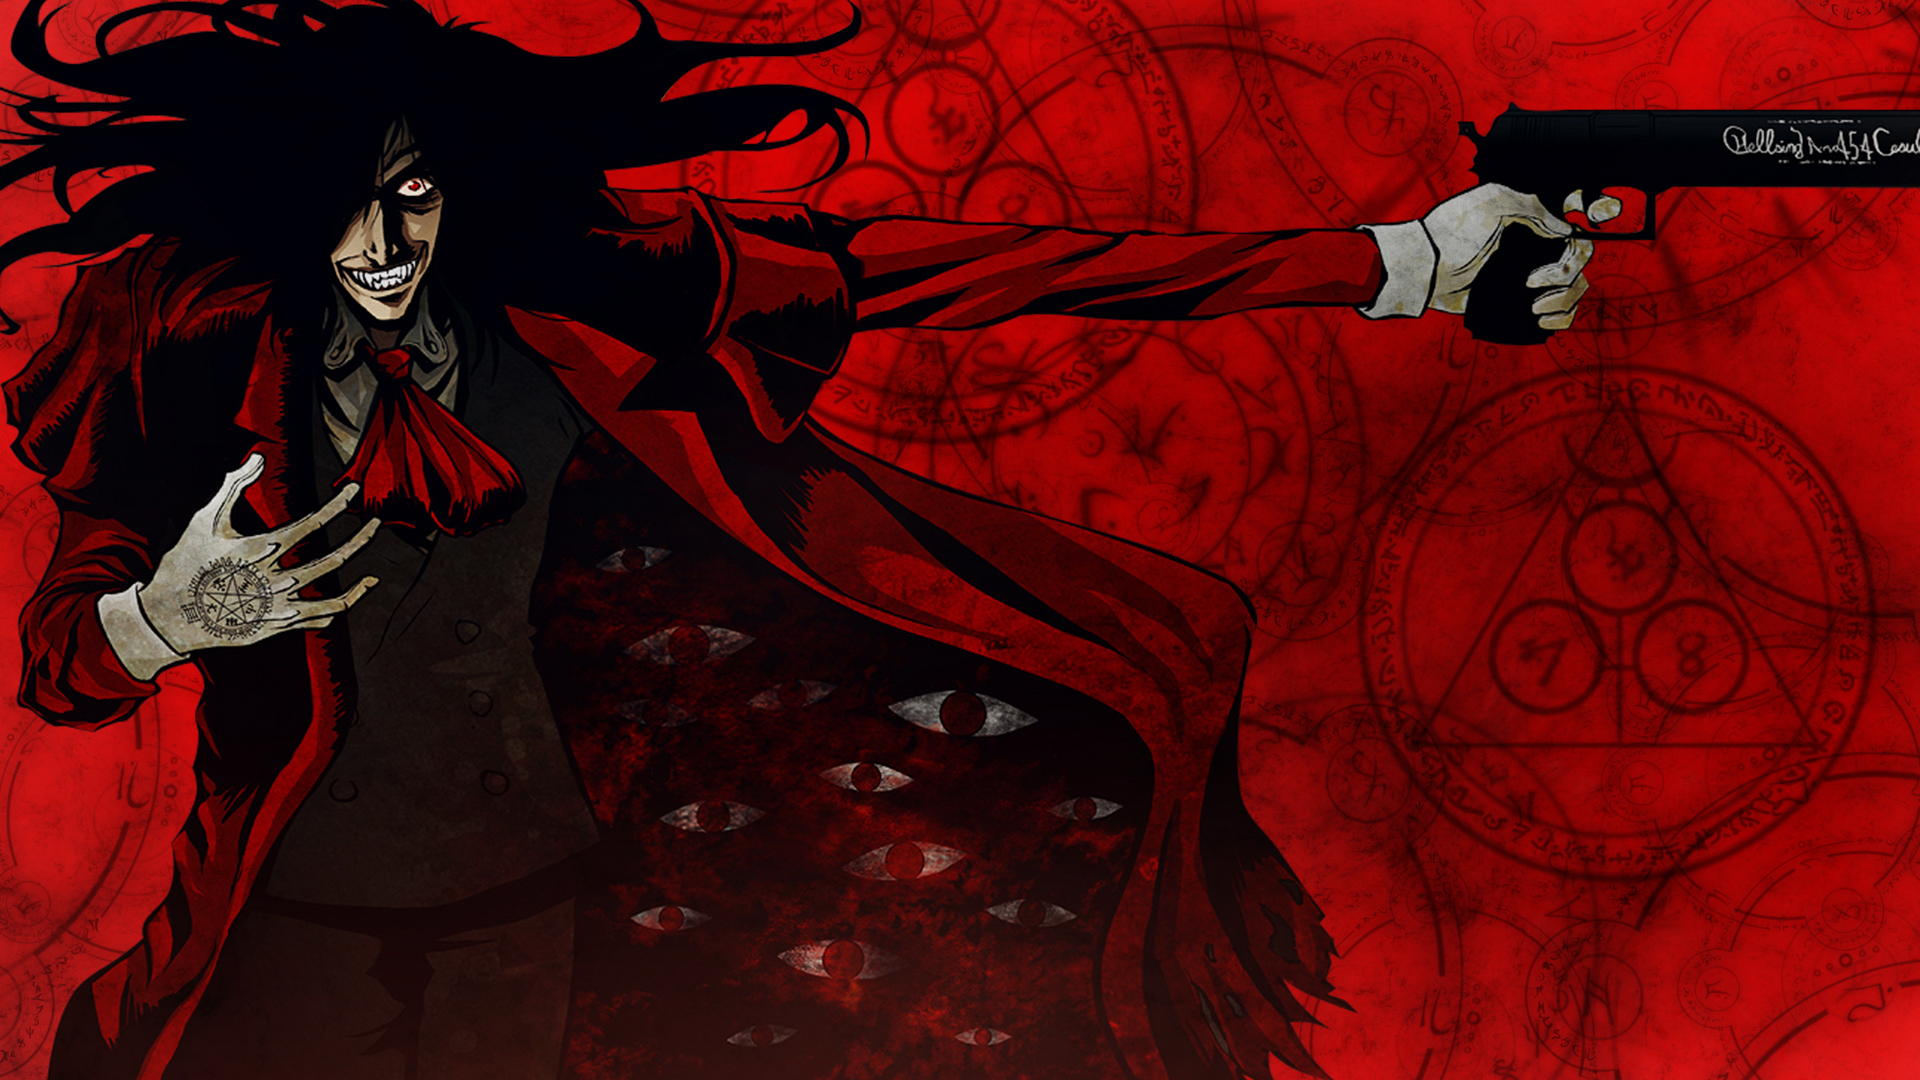 alucard fondo de pantalla hd,rojo,cg artwork,personaje de ficción,ilustración,demonio